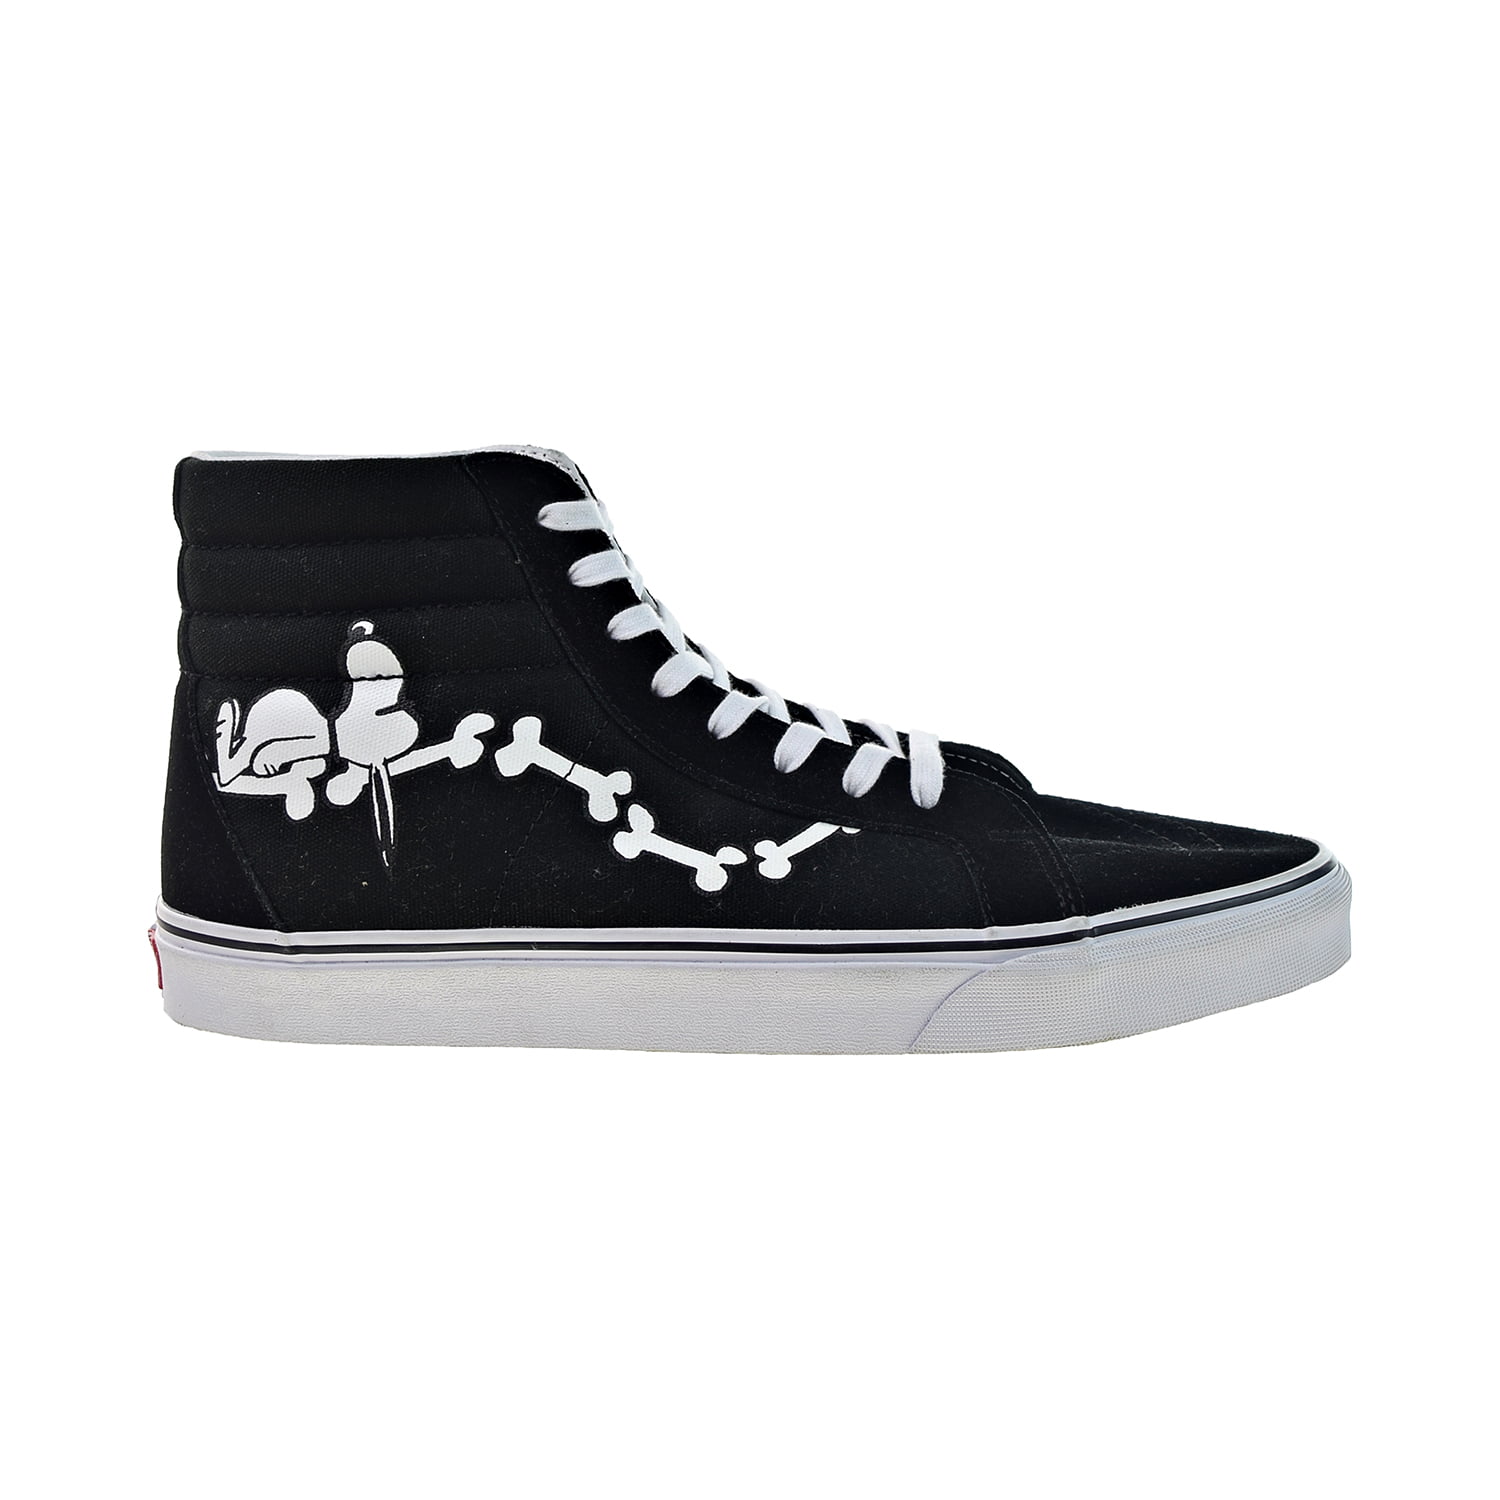 Peanuts x SK8-Hi 'Snoopy Bones' Shoes Black-White vn0a2xsb-ohl - Walmart.com